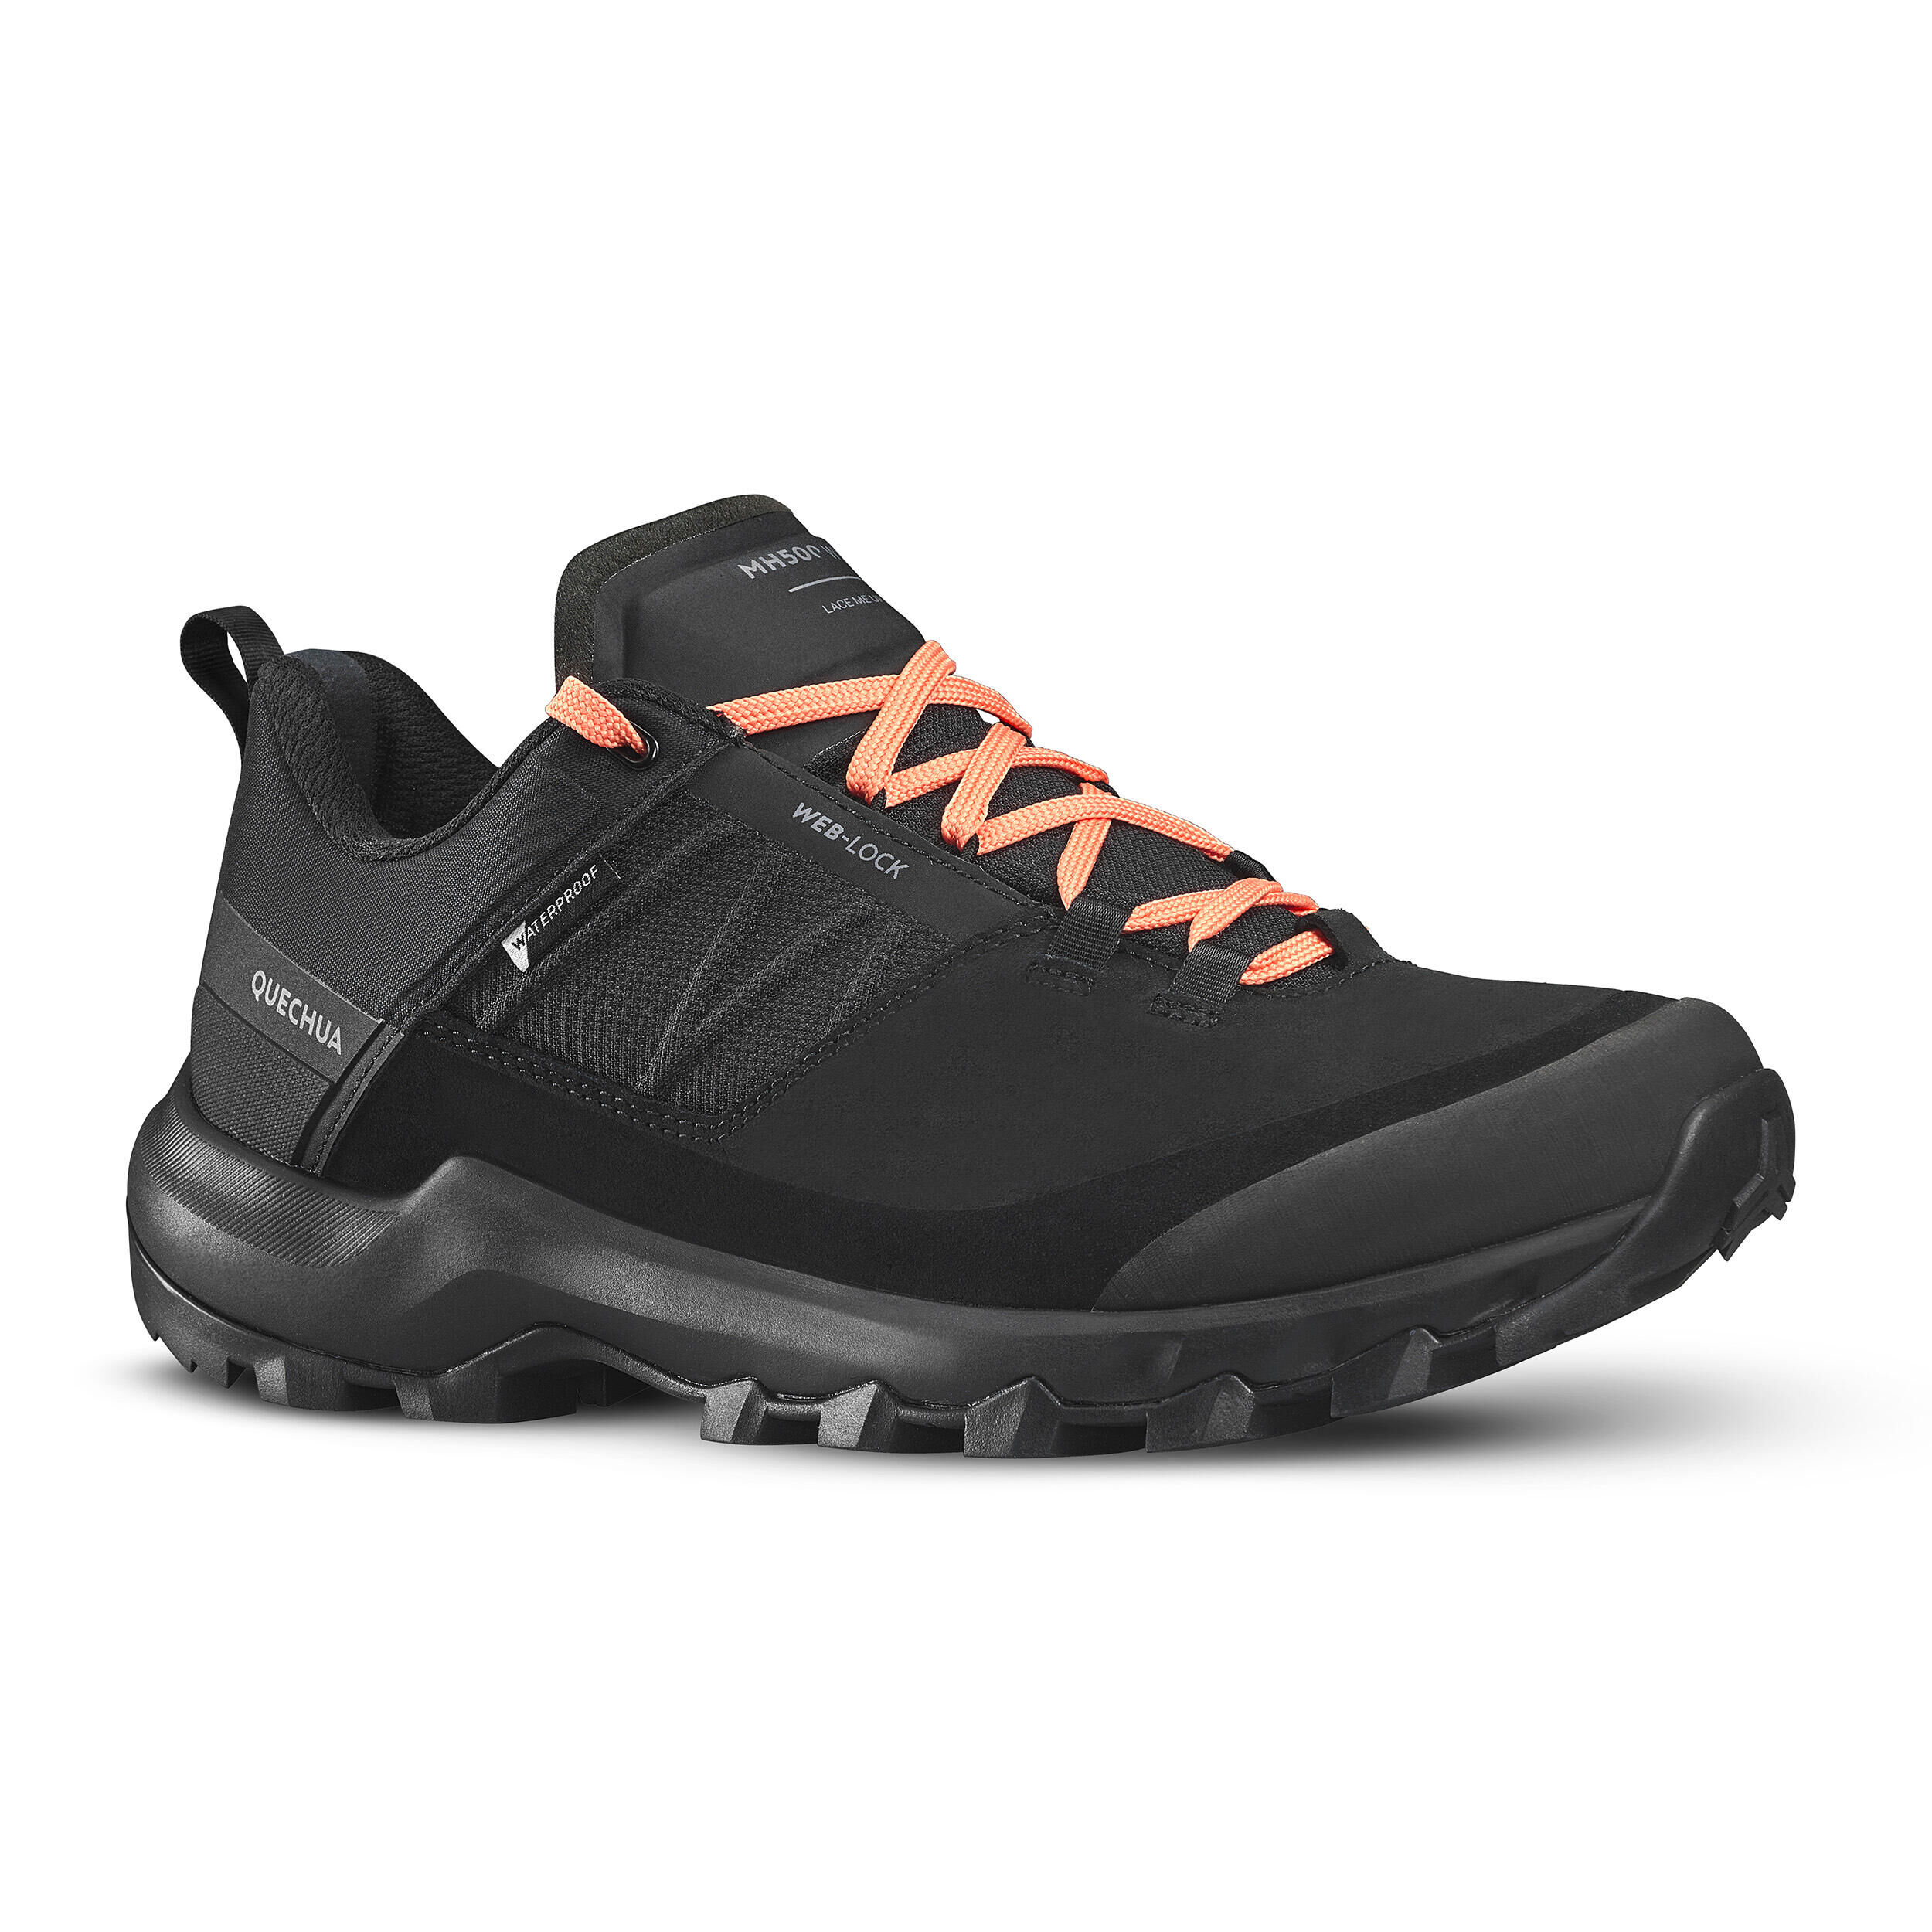 QUECHUA Women’s Waterproof Mountain Walking Shoes - MH500 Black